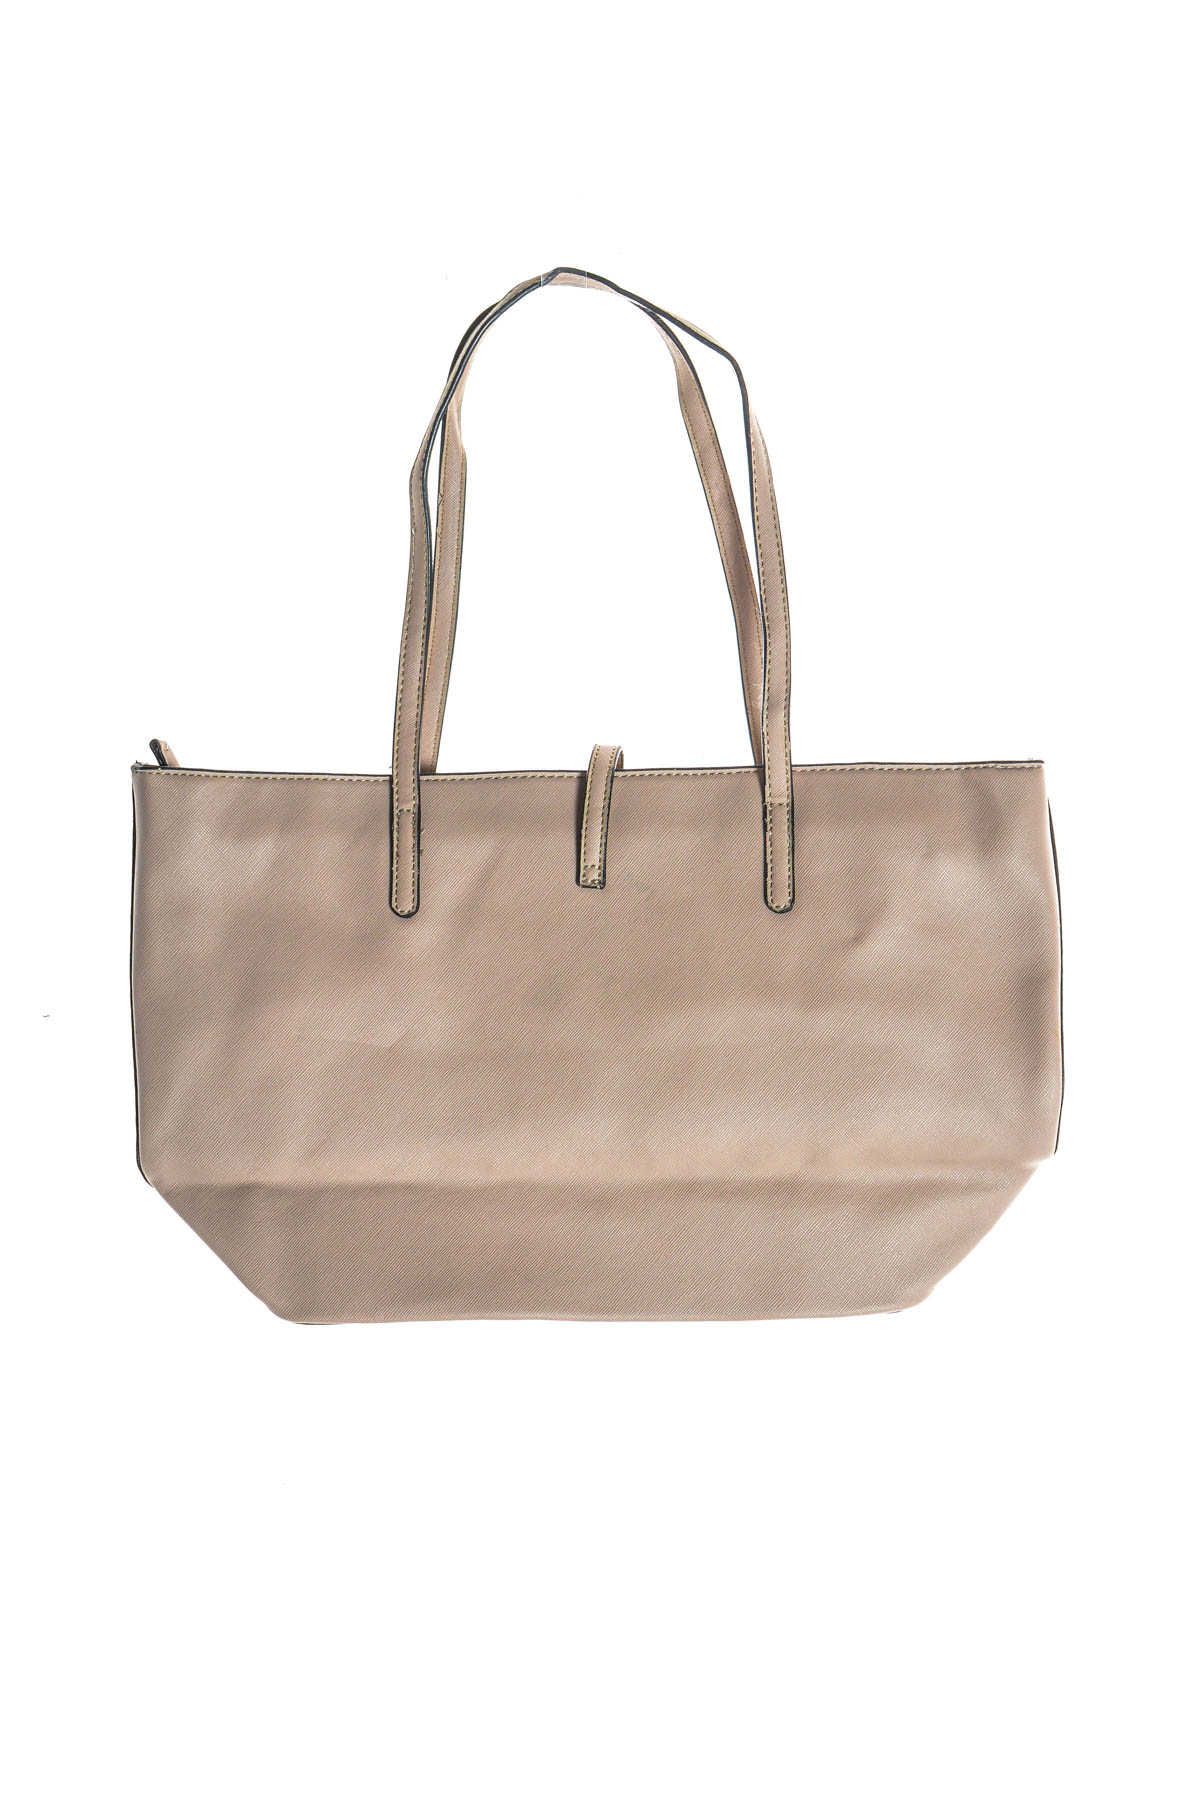 Women's bag - 1